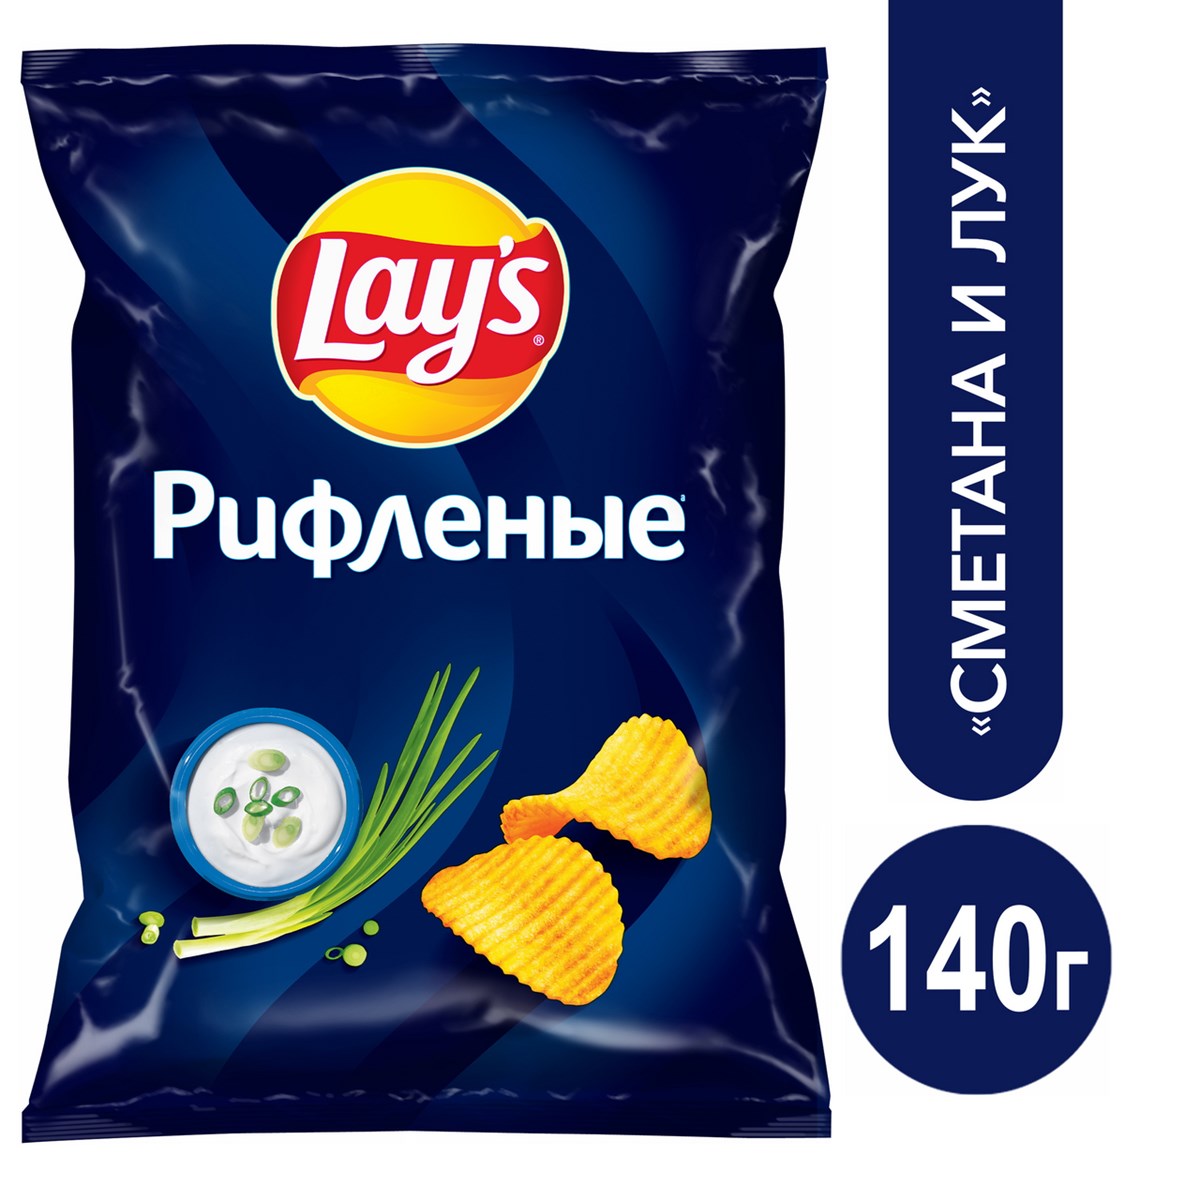 Посадки картошки для чипсов Lay's в России расширили на 11%